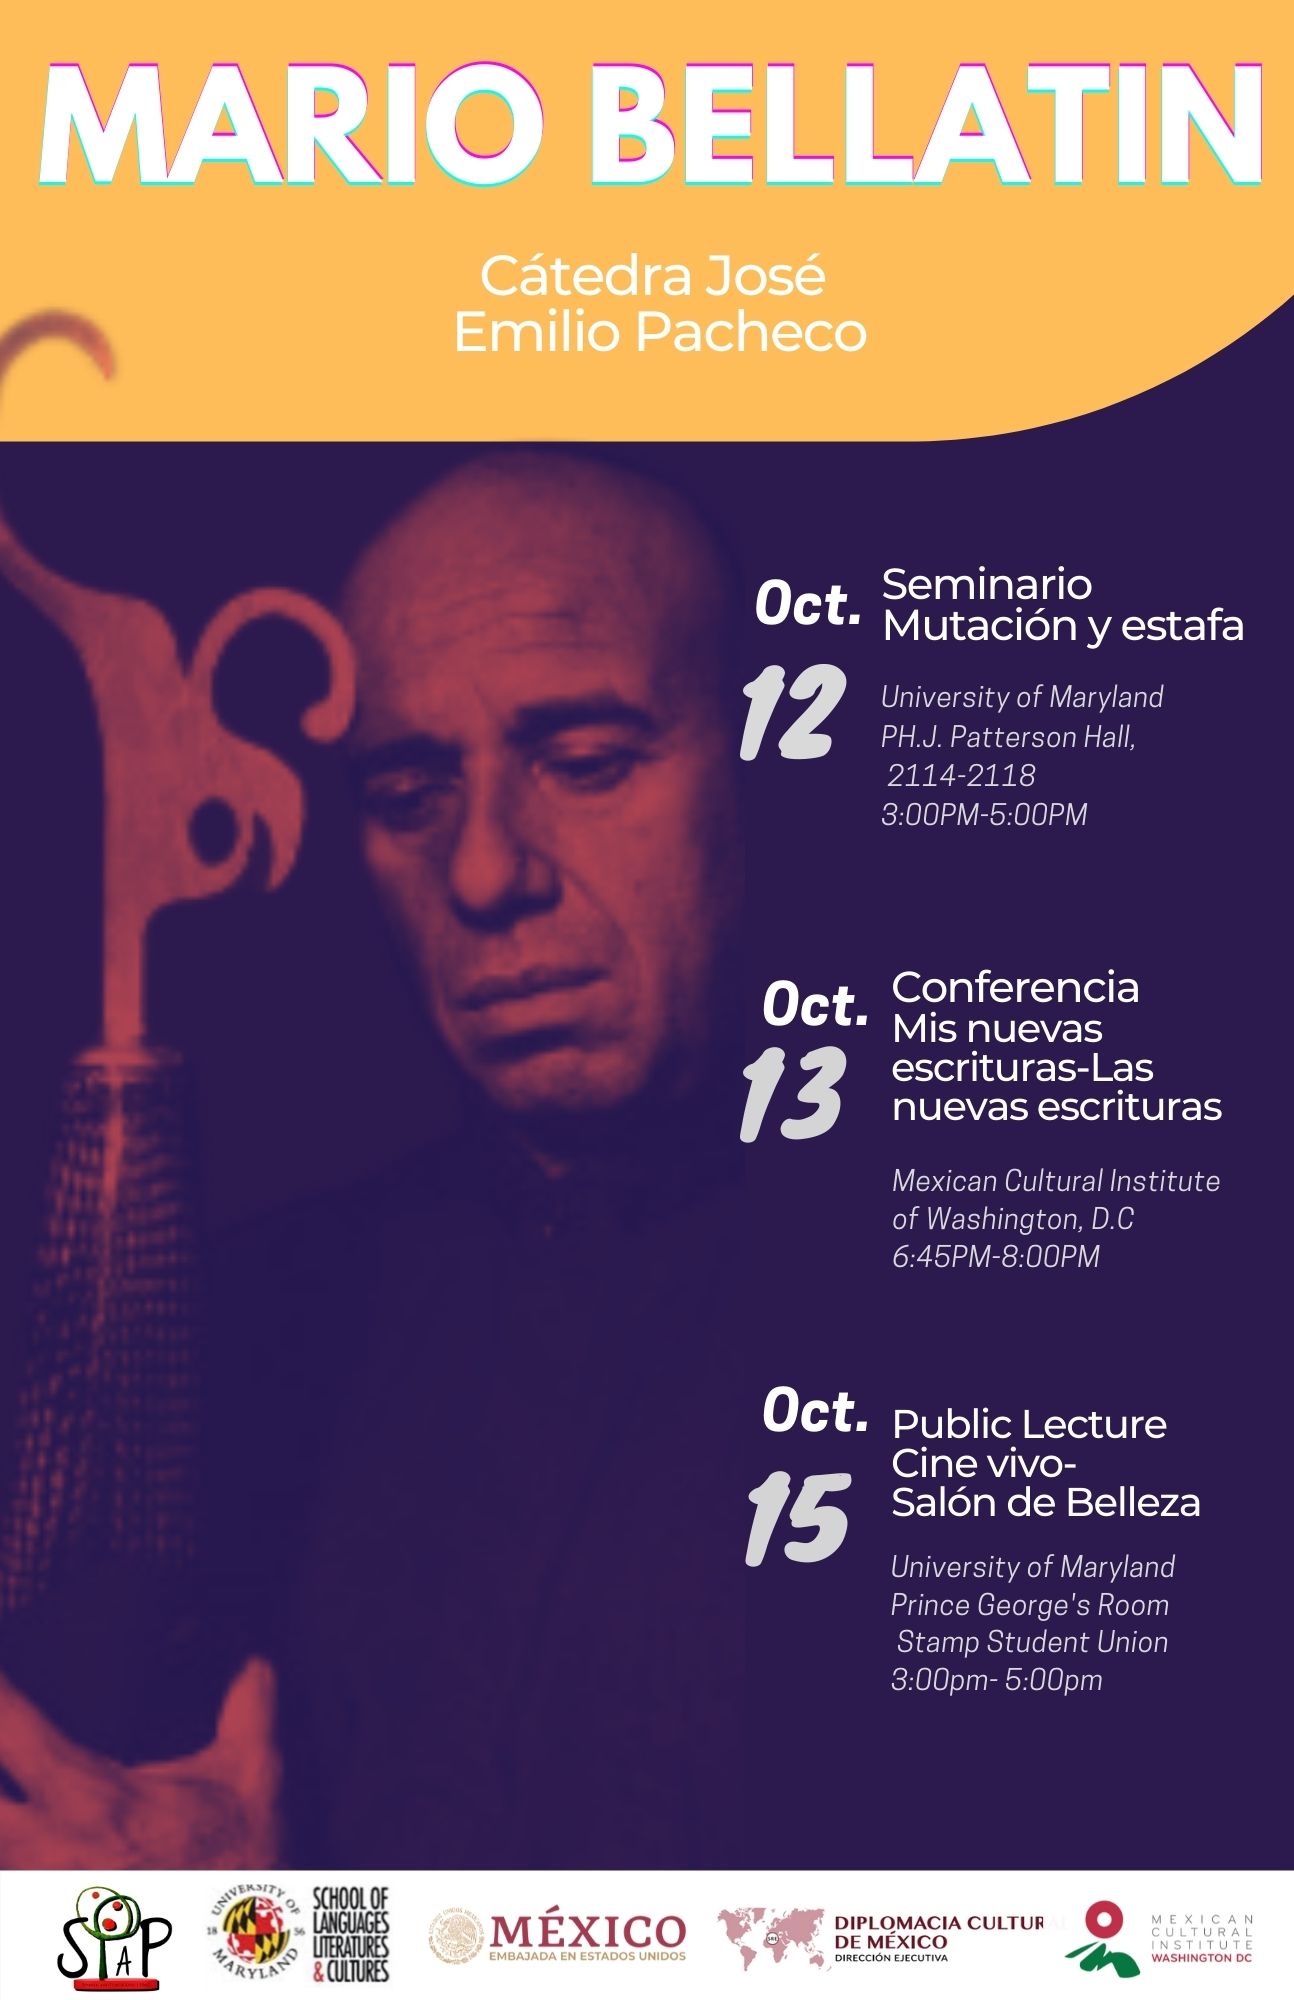 flyer for mario bellatin event, image of bellatin dark background